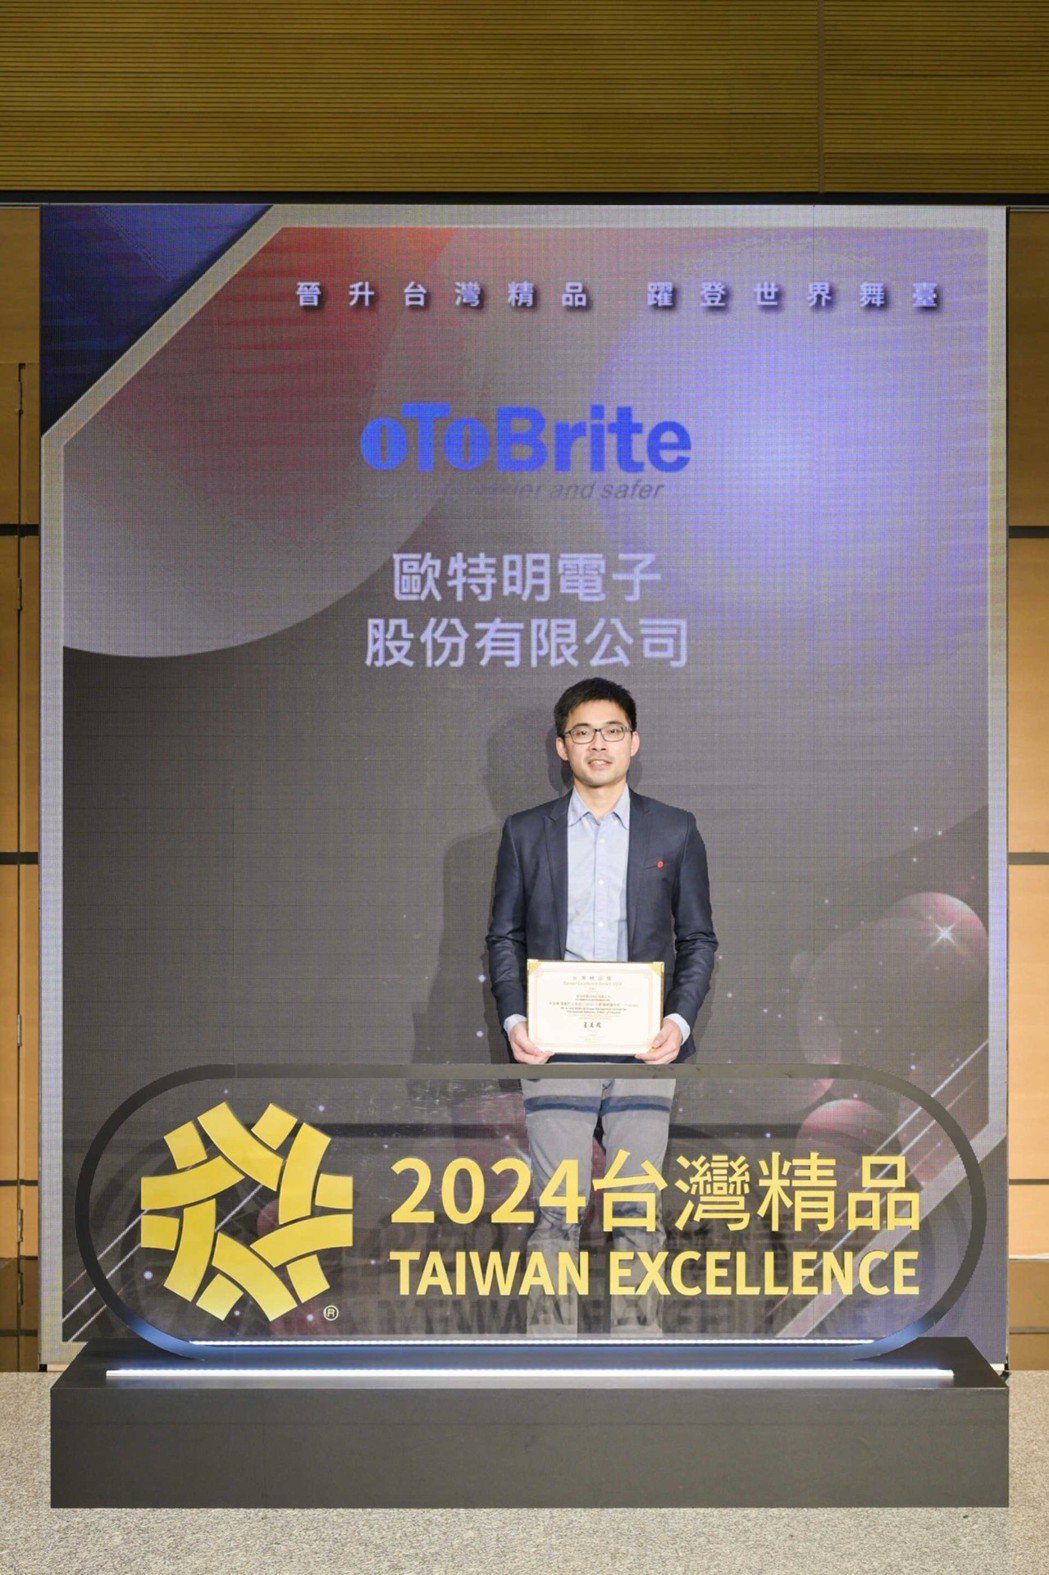 歐特明多項產品榮獲2024台灣精品獎肯定。 歐特明/提供